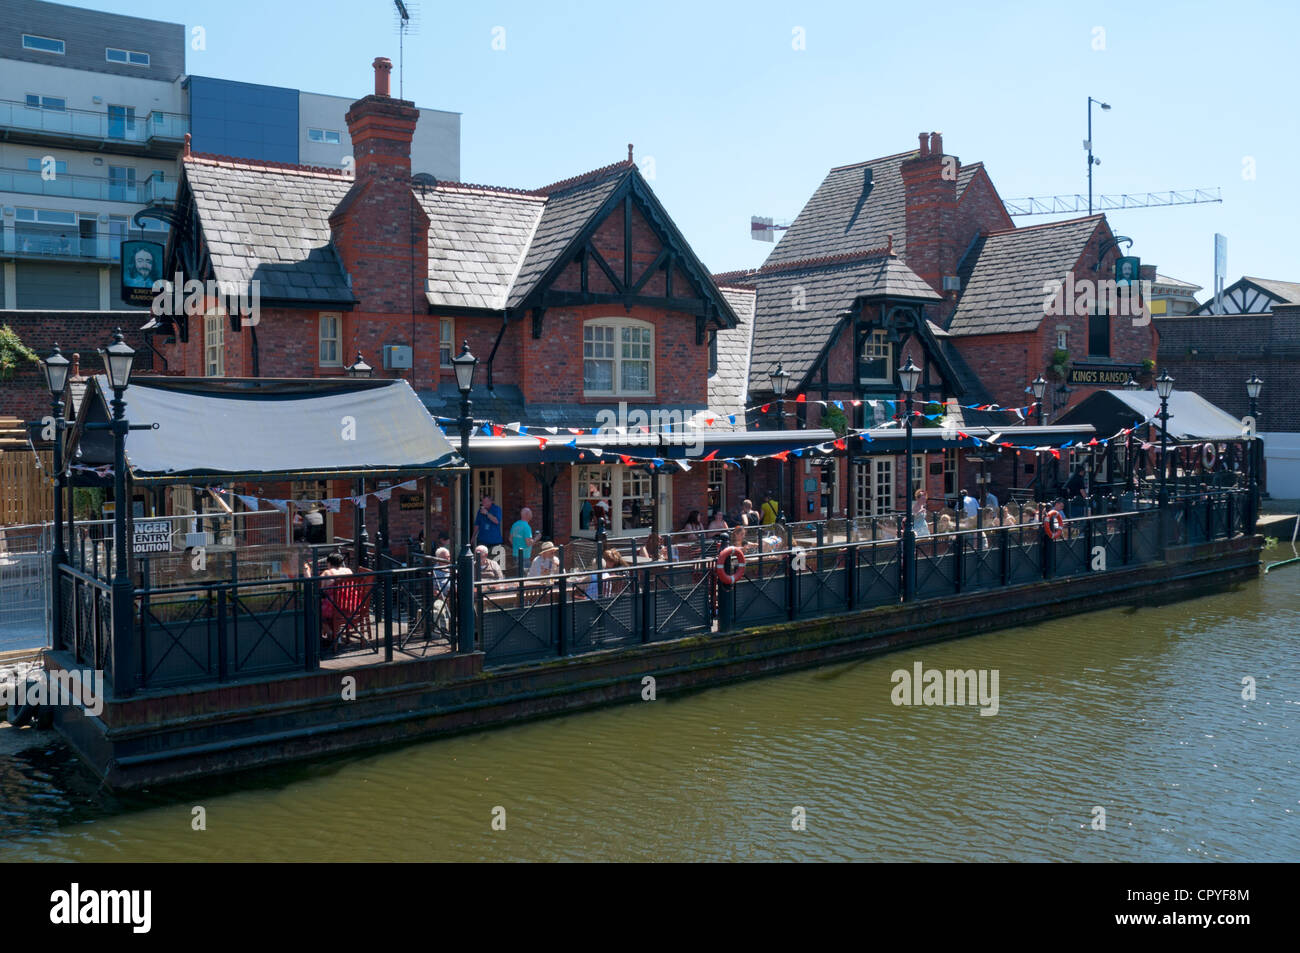 Coin salon flottant au King's Ransom pub sur le Canal de Bridgewater à vendre, Cheshire, England, UK Banque D'Images